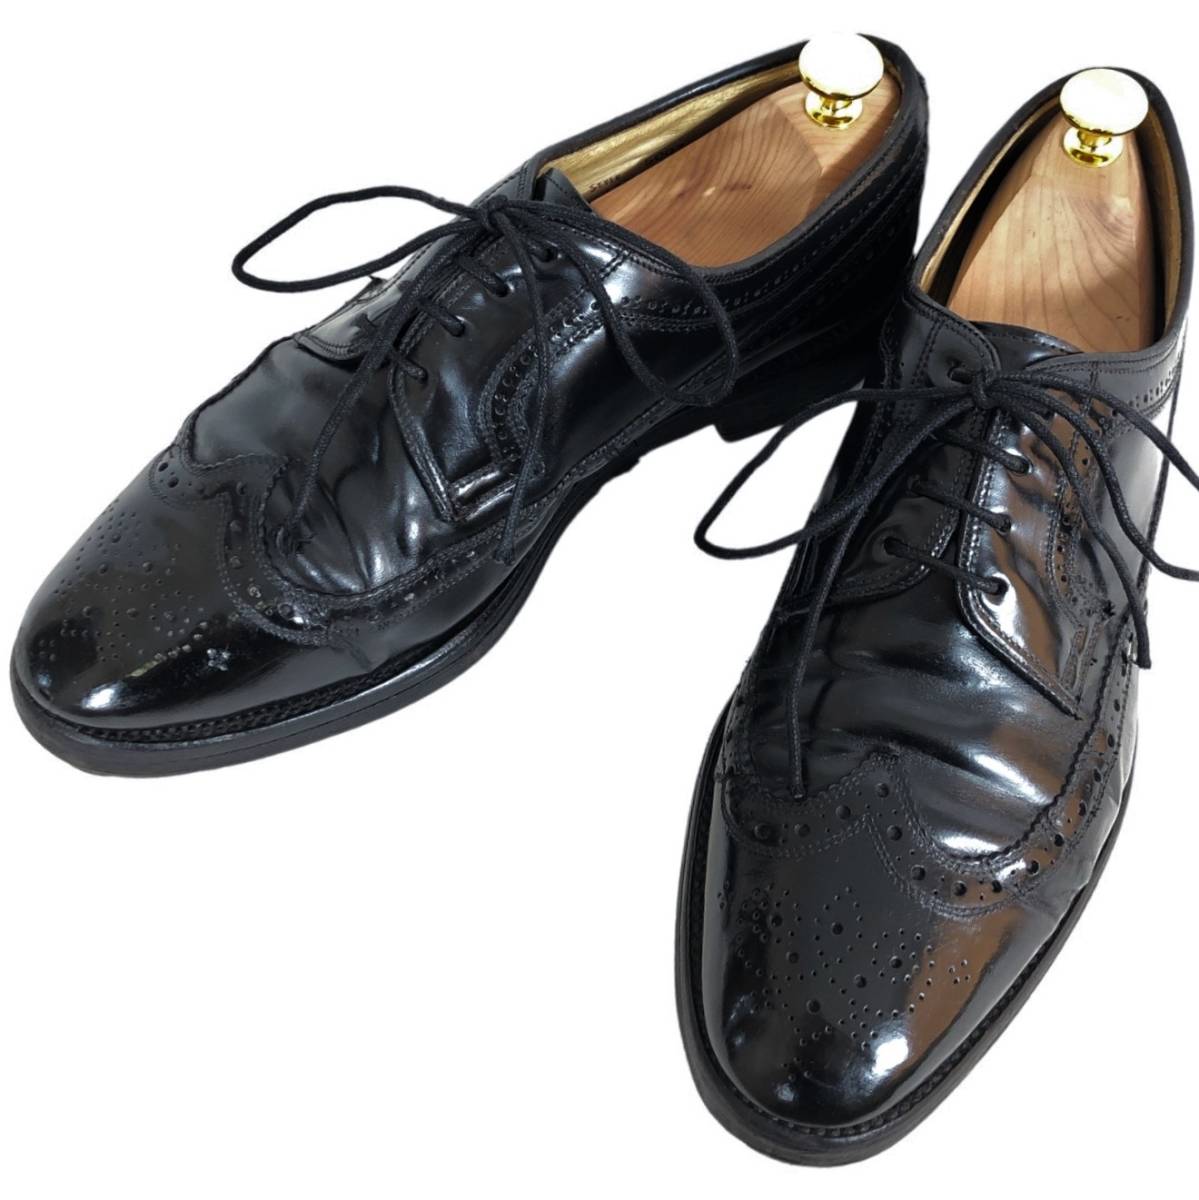 Chapman ＆ Moore チャップマン ムーア グッドイヤー ウイングチップ メダリオン レザー シューズ 8 26㎝ イギリス製 ブラック 本革 革靴